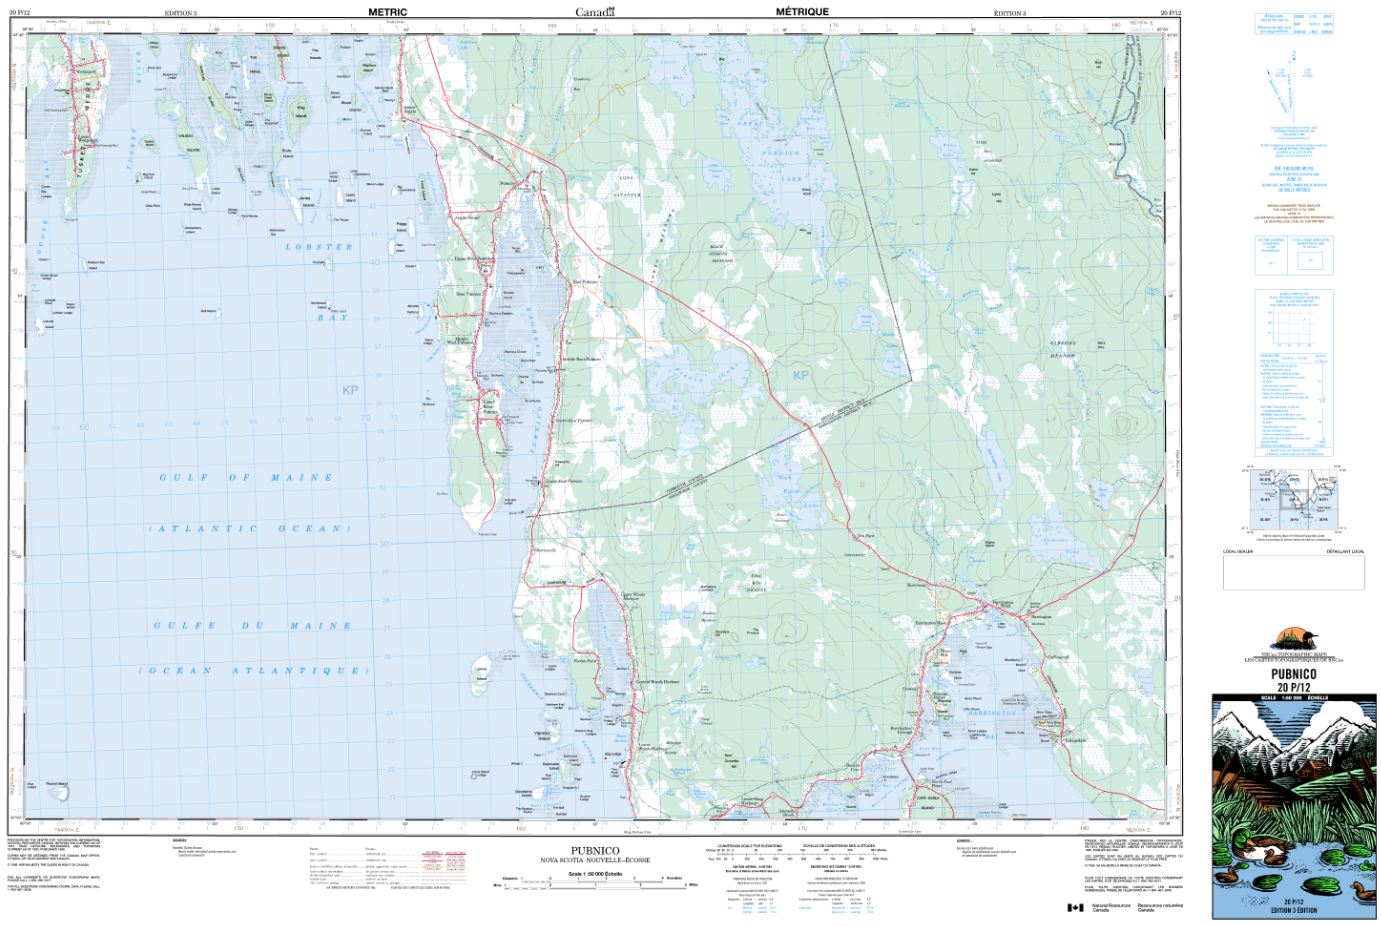 20p12 Pubnico Topographic Map Nova Scotia Maps And More 8015